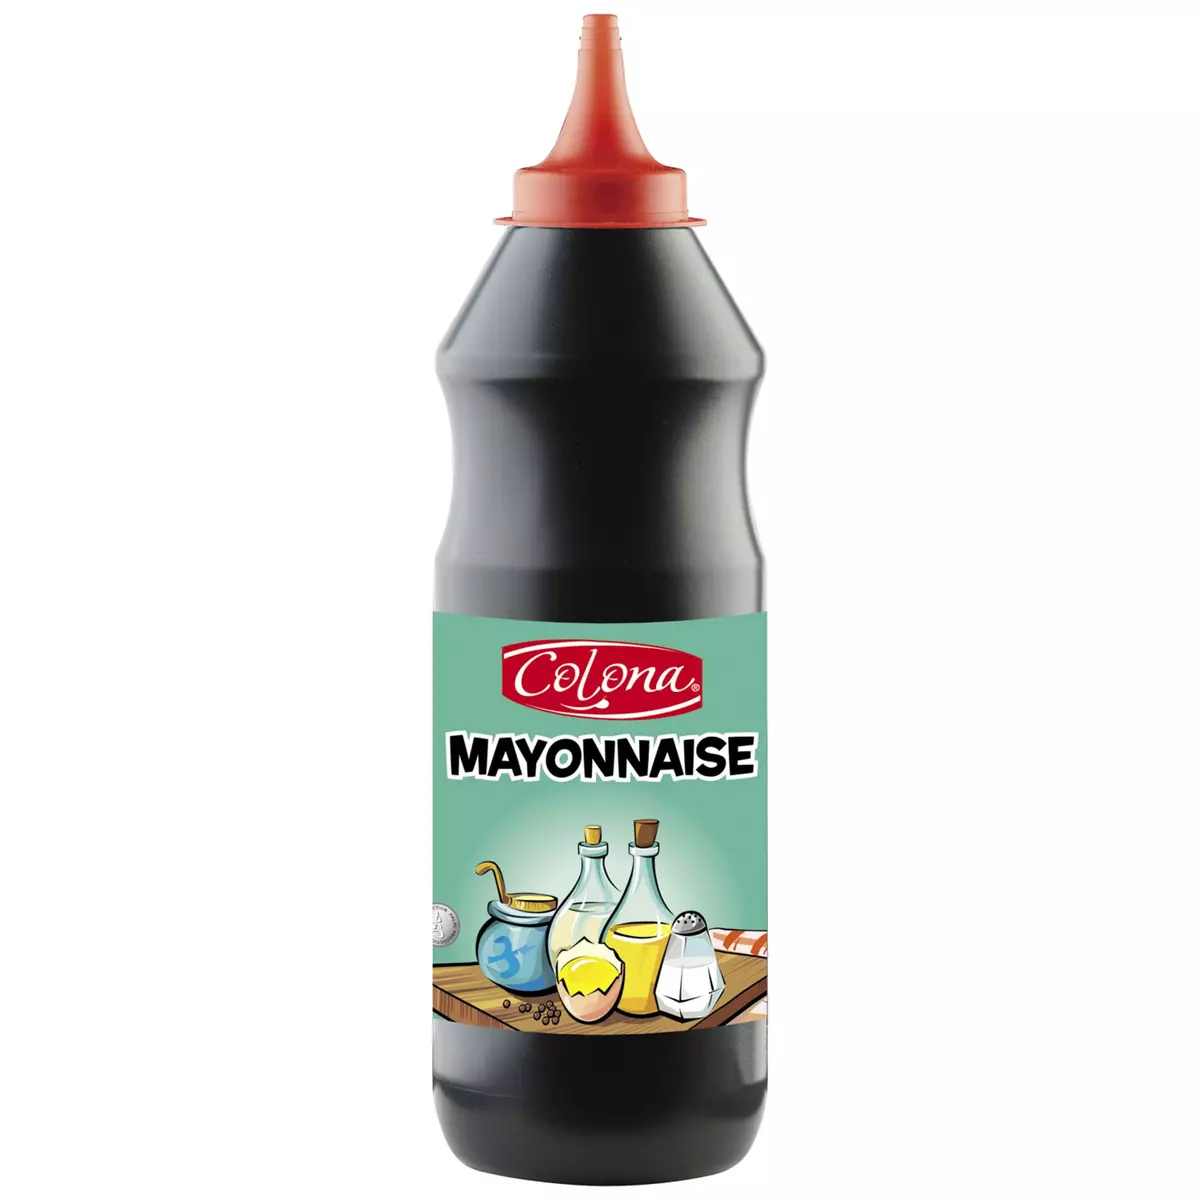 COLONA Mayonnaise flacon souple 830g